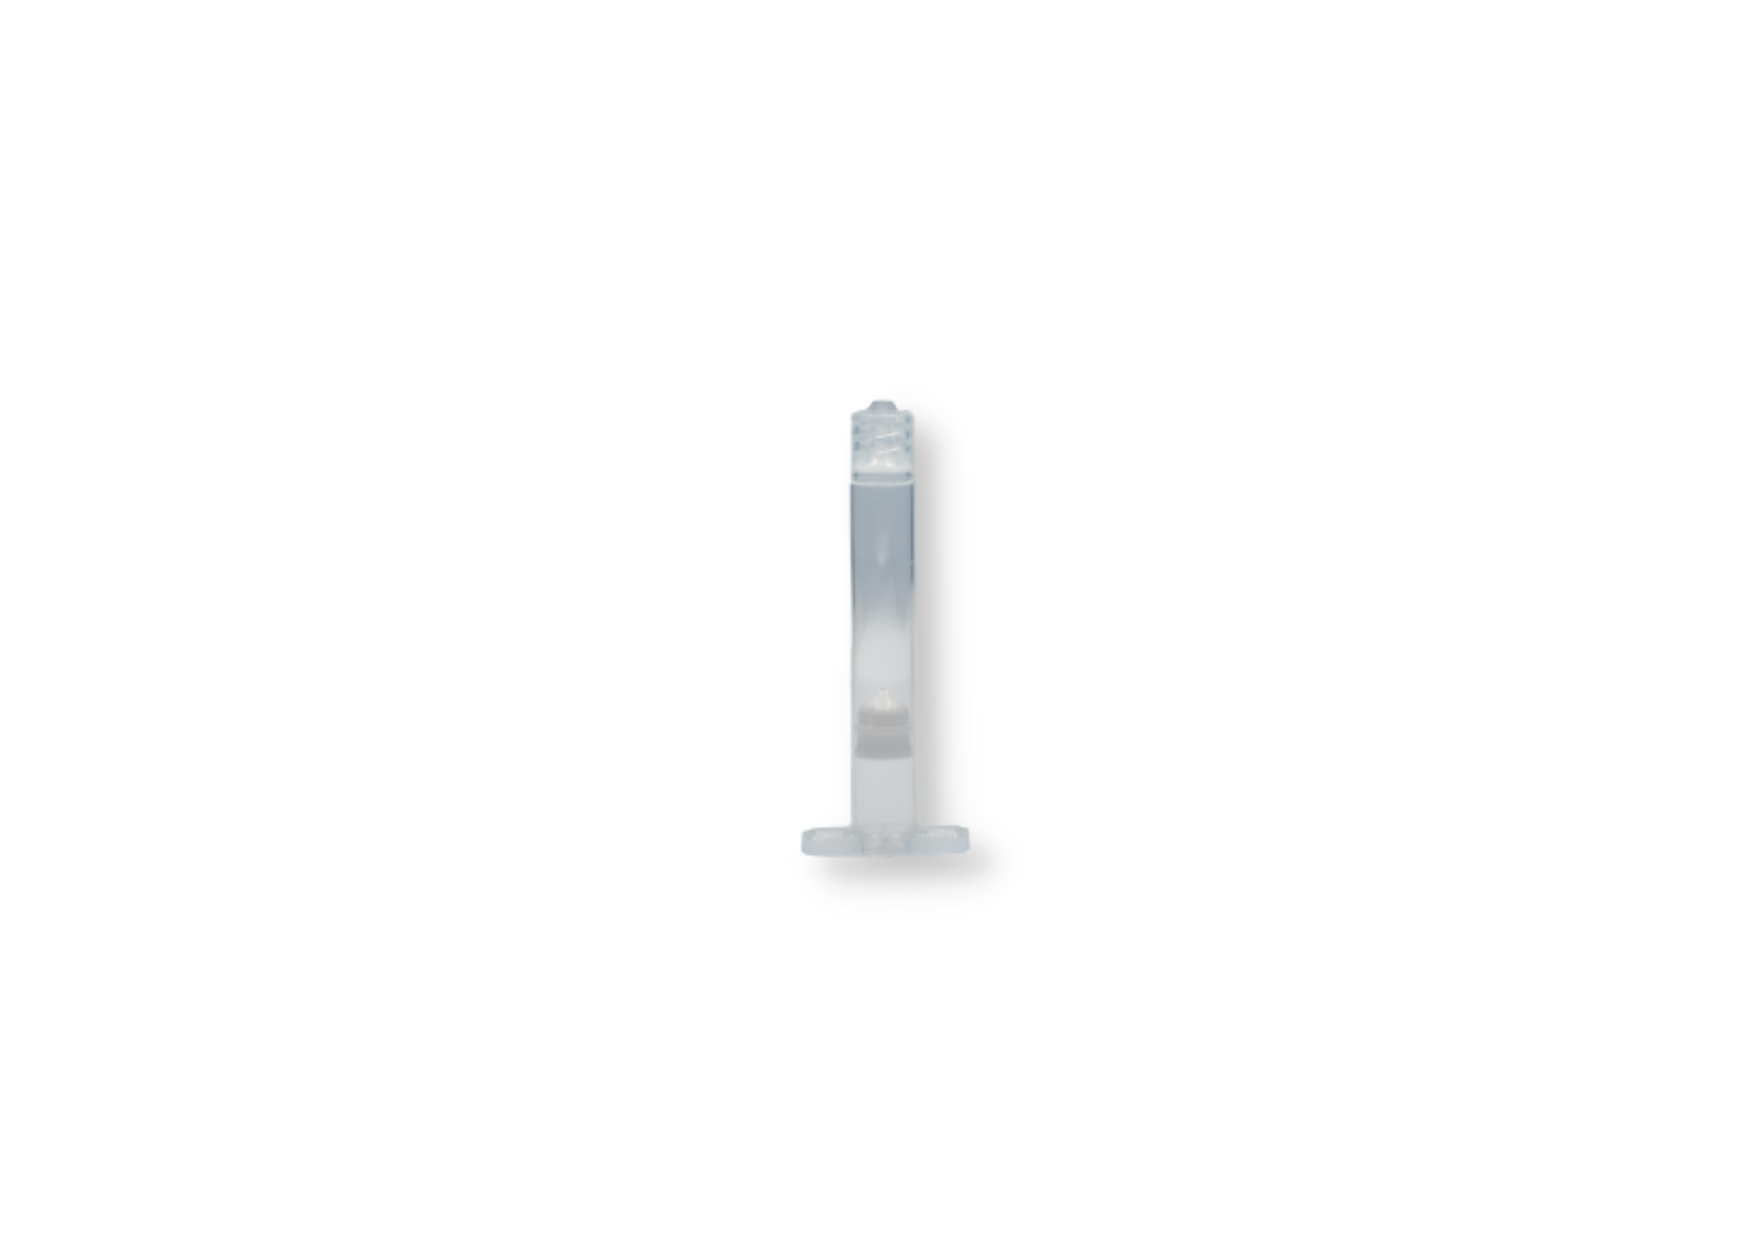 5 cc transparent polyethylene and polypropylene syringe, piston included (50 U)